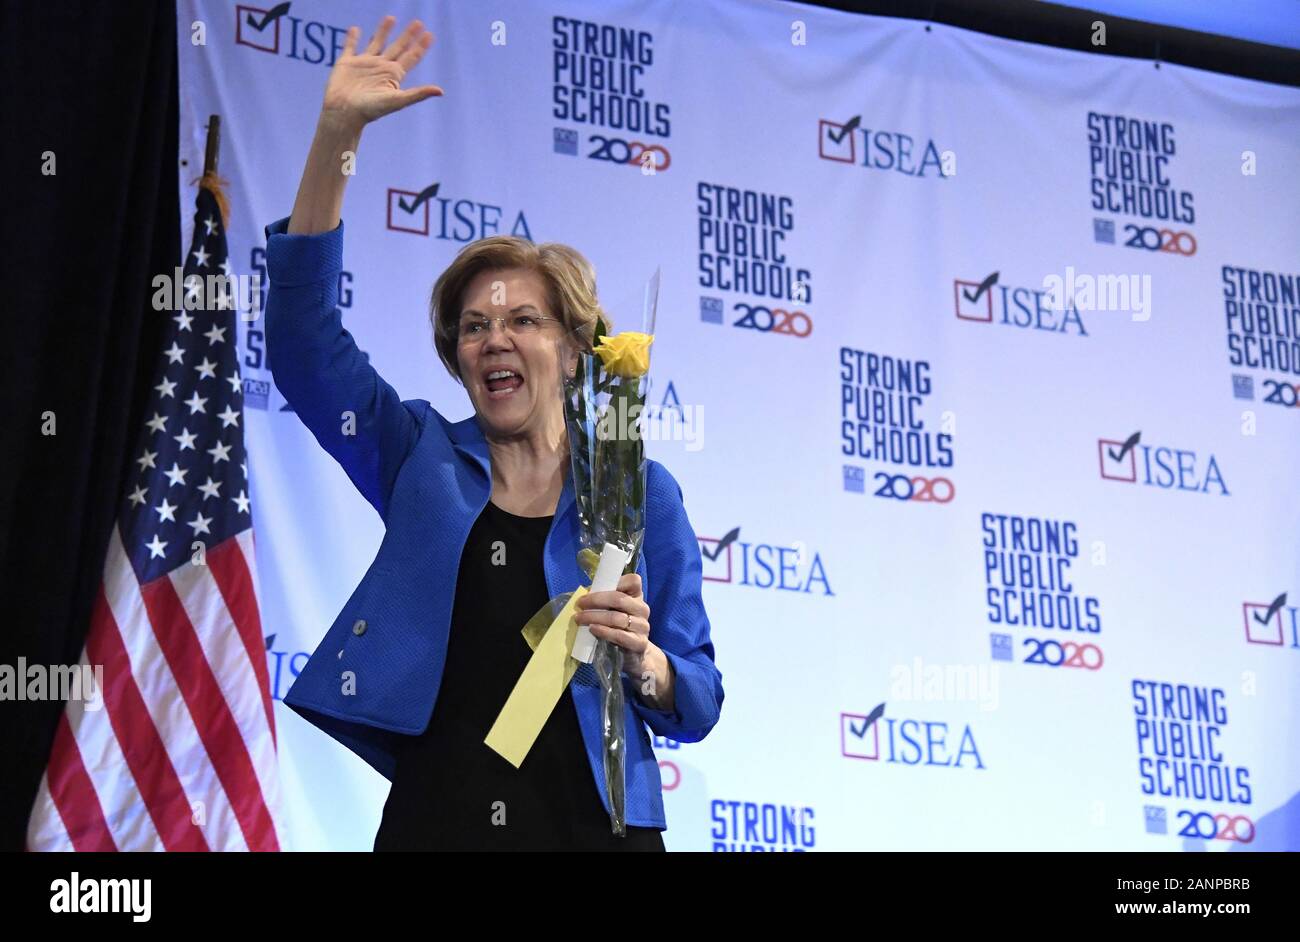 Des Moines, Estados Unidos. 18 ene, 2020. 2020 senador candidato presidencial demócrata de Massachusetts Elizabeth Warren, sosteniendo una rosa amarilla para conmemorar el 100º aniversario de la adopción de la enmienda 19, permitiendo el voto a las mujeres, concluye su intervención en una conferencia de la Asociación de Educación del Estado de Iowa en Des Moines, Iowa, Sábado, 18 de enero de 2020. Los candidatos siguen campaña como Iowa's primero-en-el-nación caucuses en febrero 3 enfoques. Foto por Mike Theiler/UPI Crédito: UPI/Alamy Live News Foto de stock